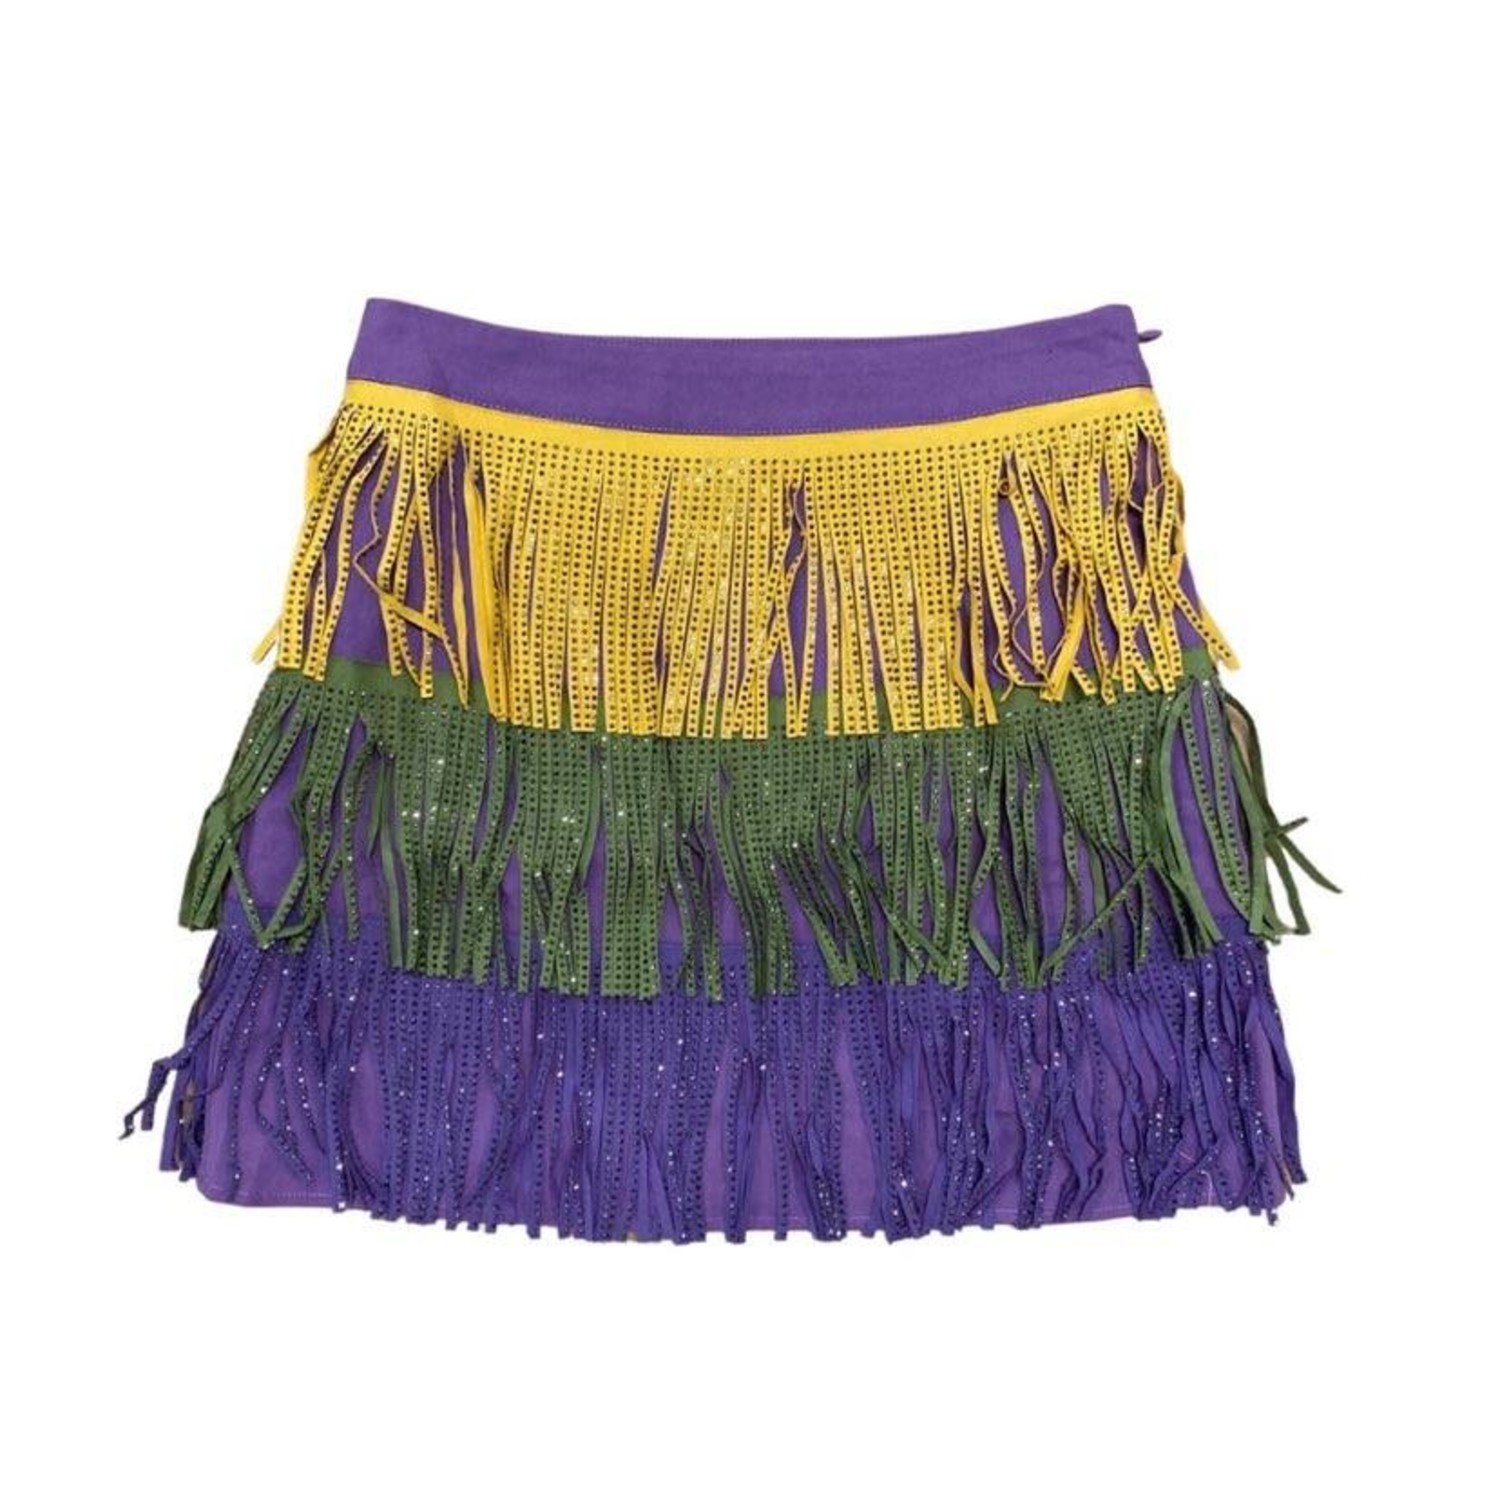 Mardi Gras Fringe Skirt – AnnaDean